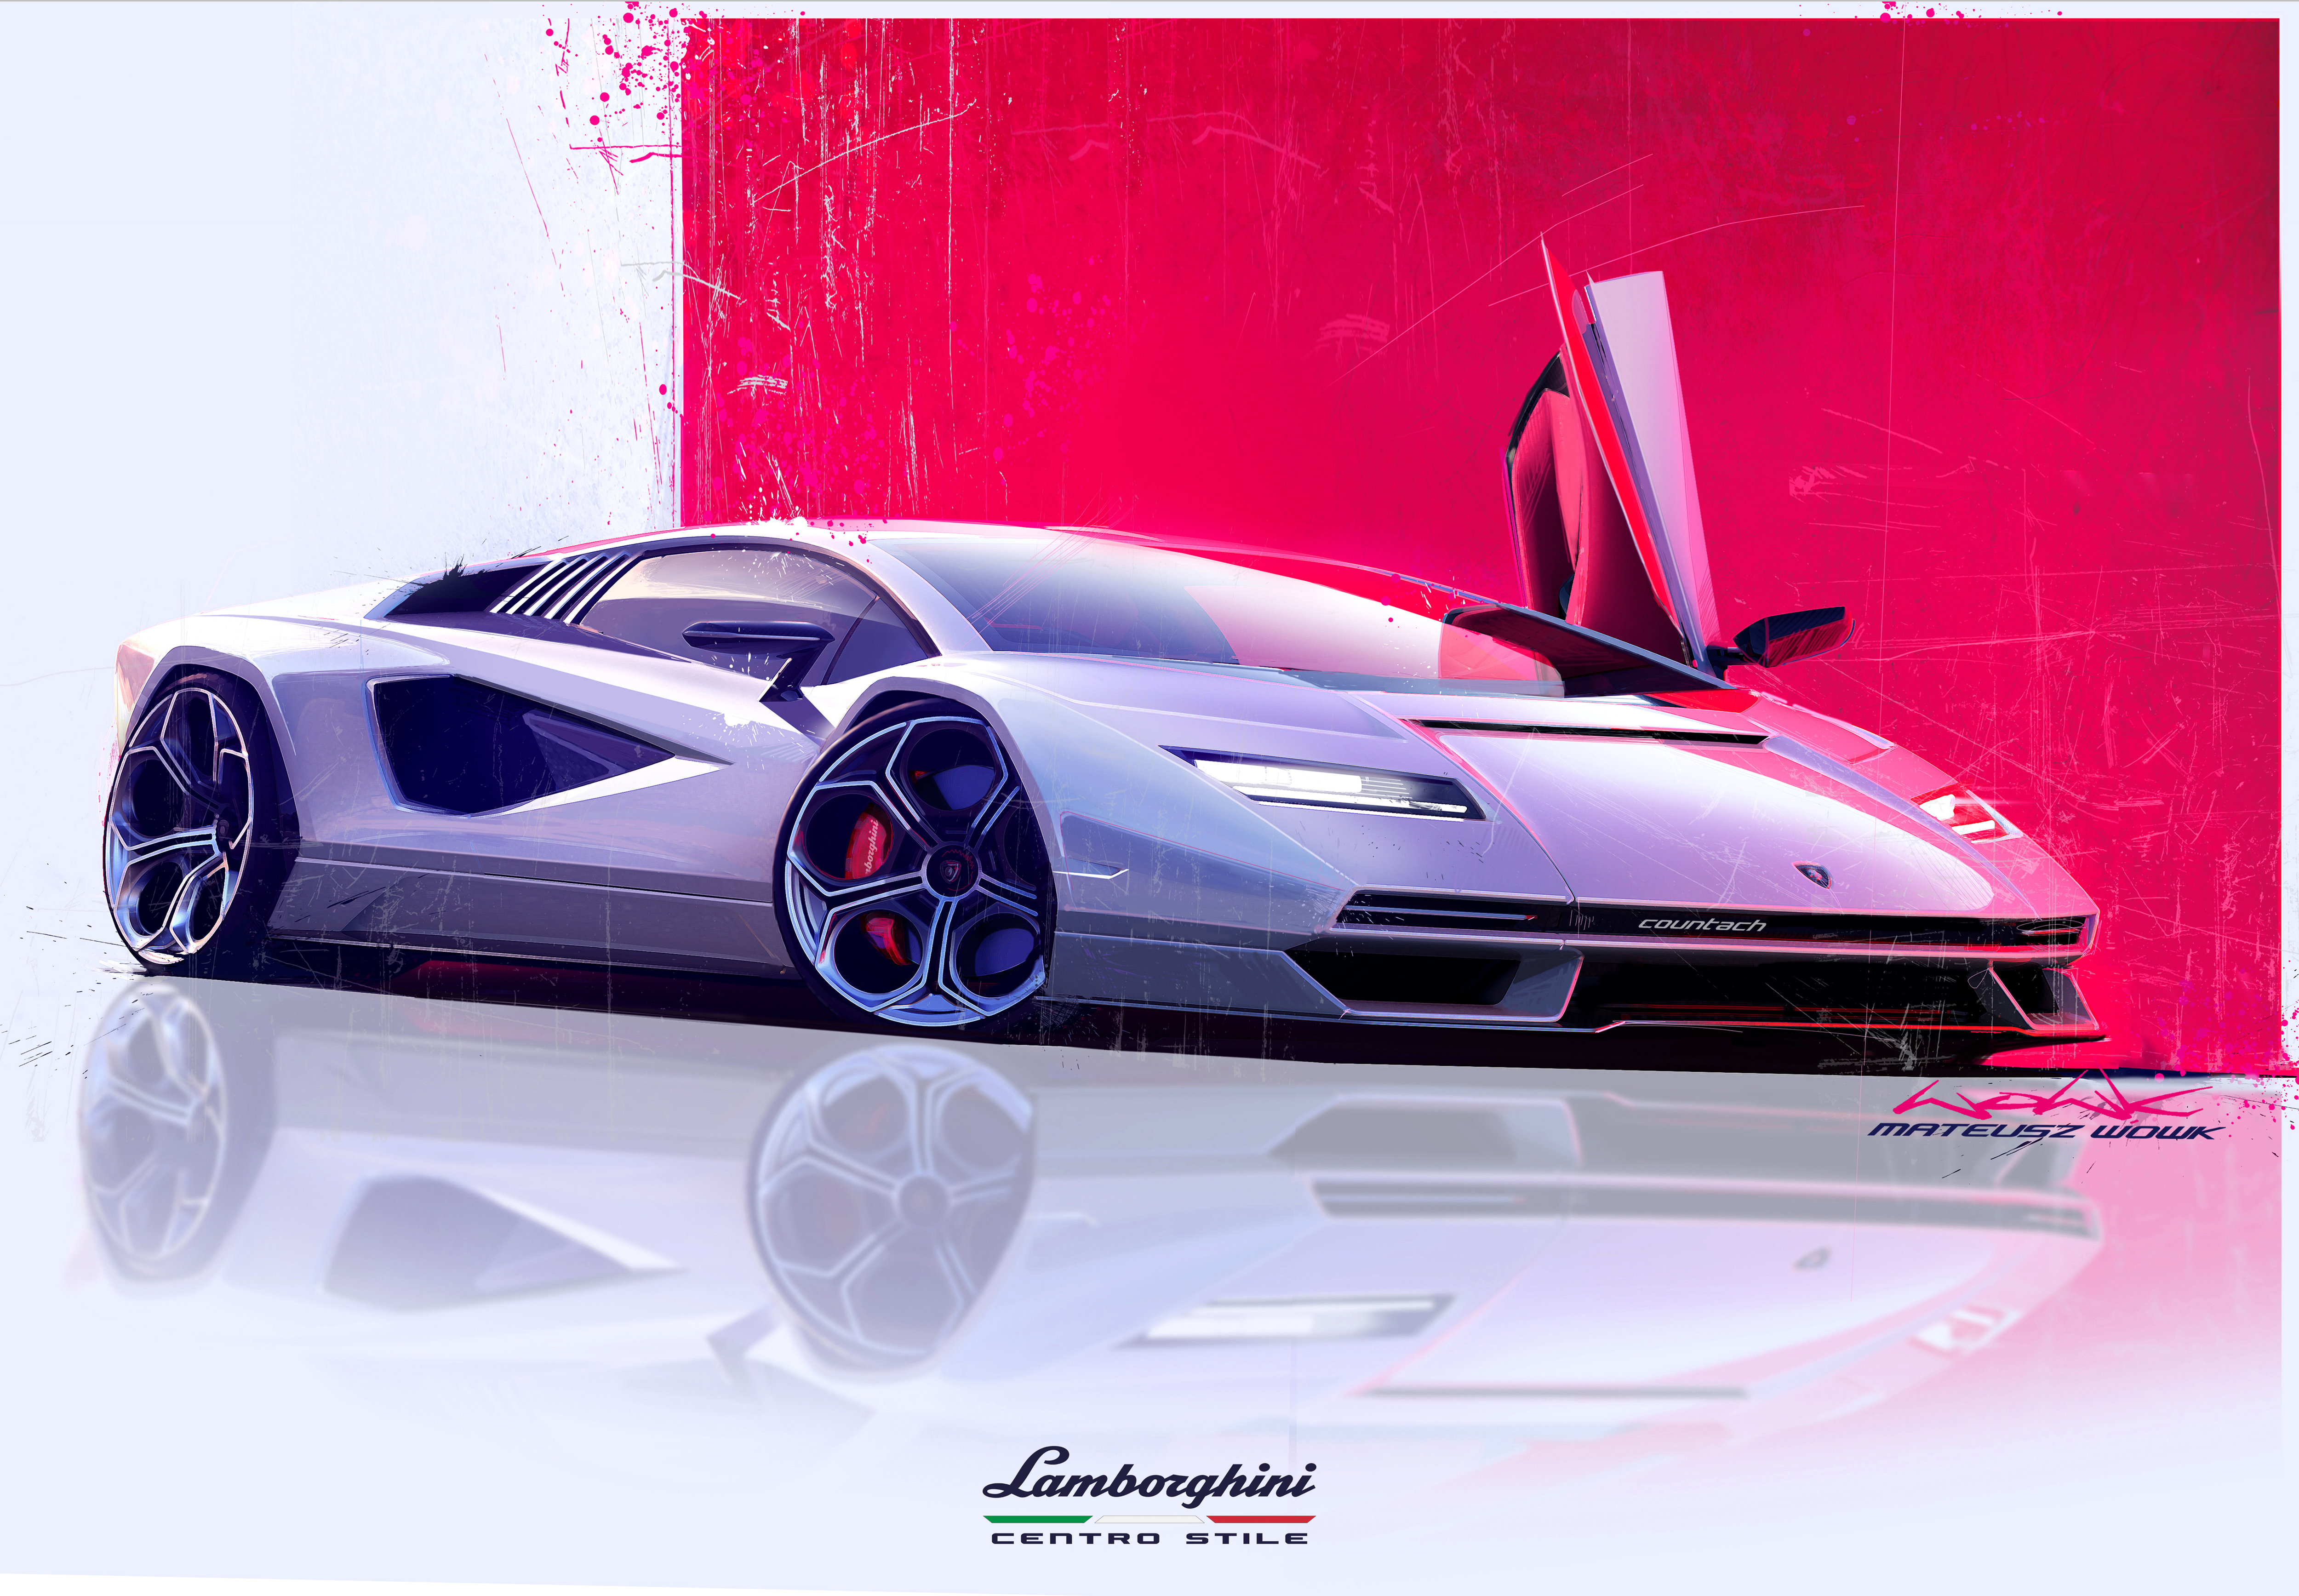 Lamborghini Countach: Được giới thiệu vào năm 1974, Lamborghini Countach vẫn là một trong những mẫu xe thể thao vĩ đại nhất từng được sản xuất. Với thiết kế đầy kiêu hãnh và động cơ mạnh mẽ, chiếc xe này sẽ khiến bạn cảm thấy như một ngôi sao đang lái trên đường.